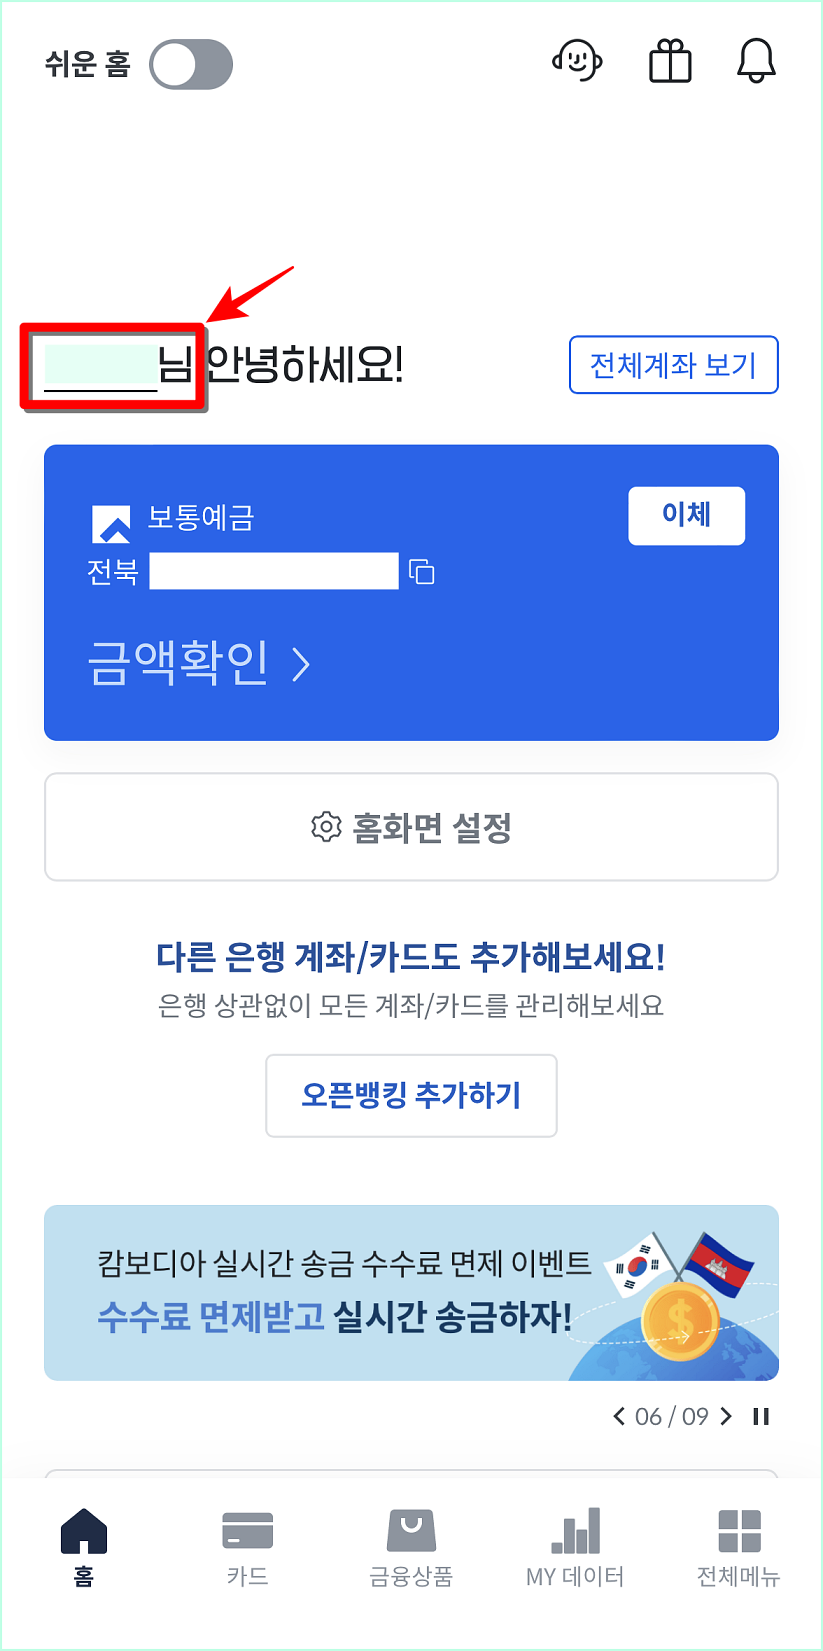 전북은행 JB뱅크 앱에 접속하여 고객명을 선택